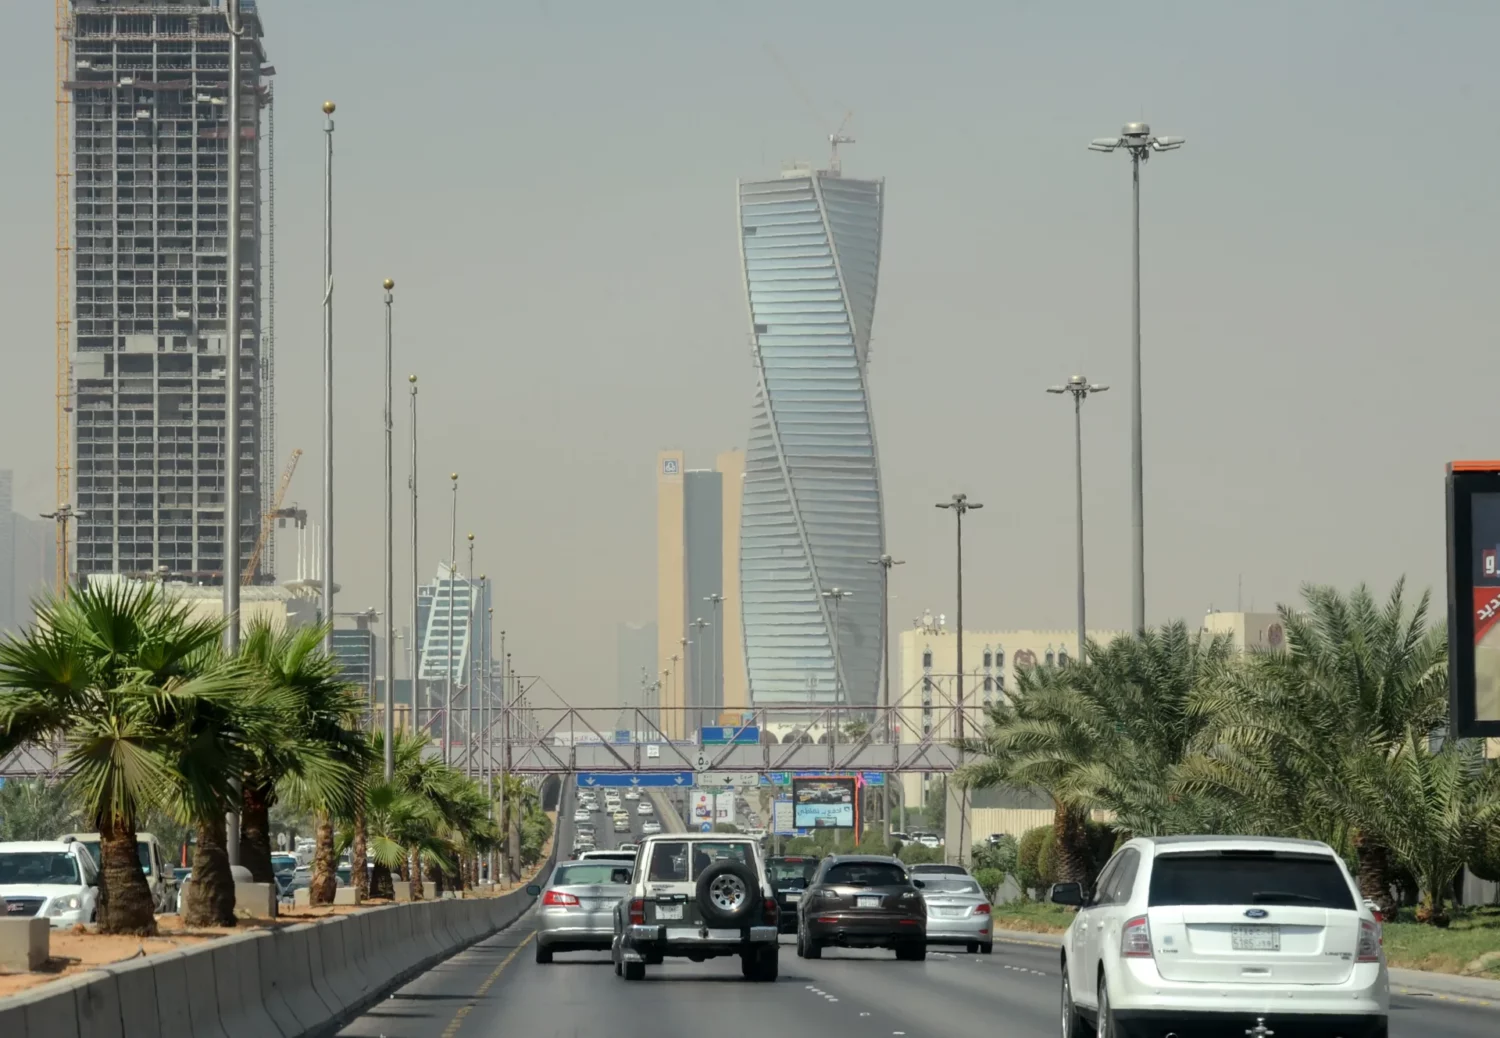 مشهد عام للعاصمة السعودية، الرياض
Credit: FAYEZ NURELDINE/AFP via Getty Images